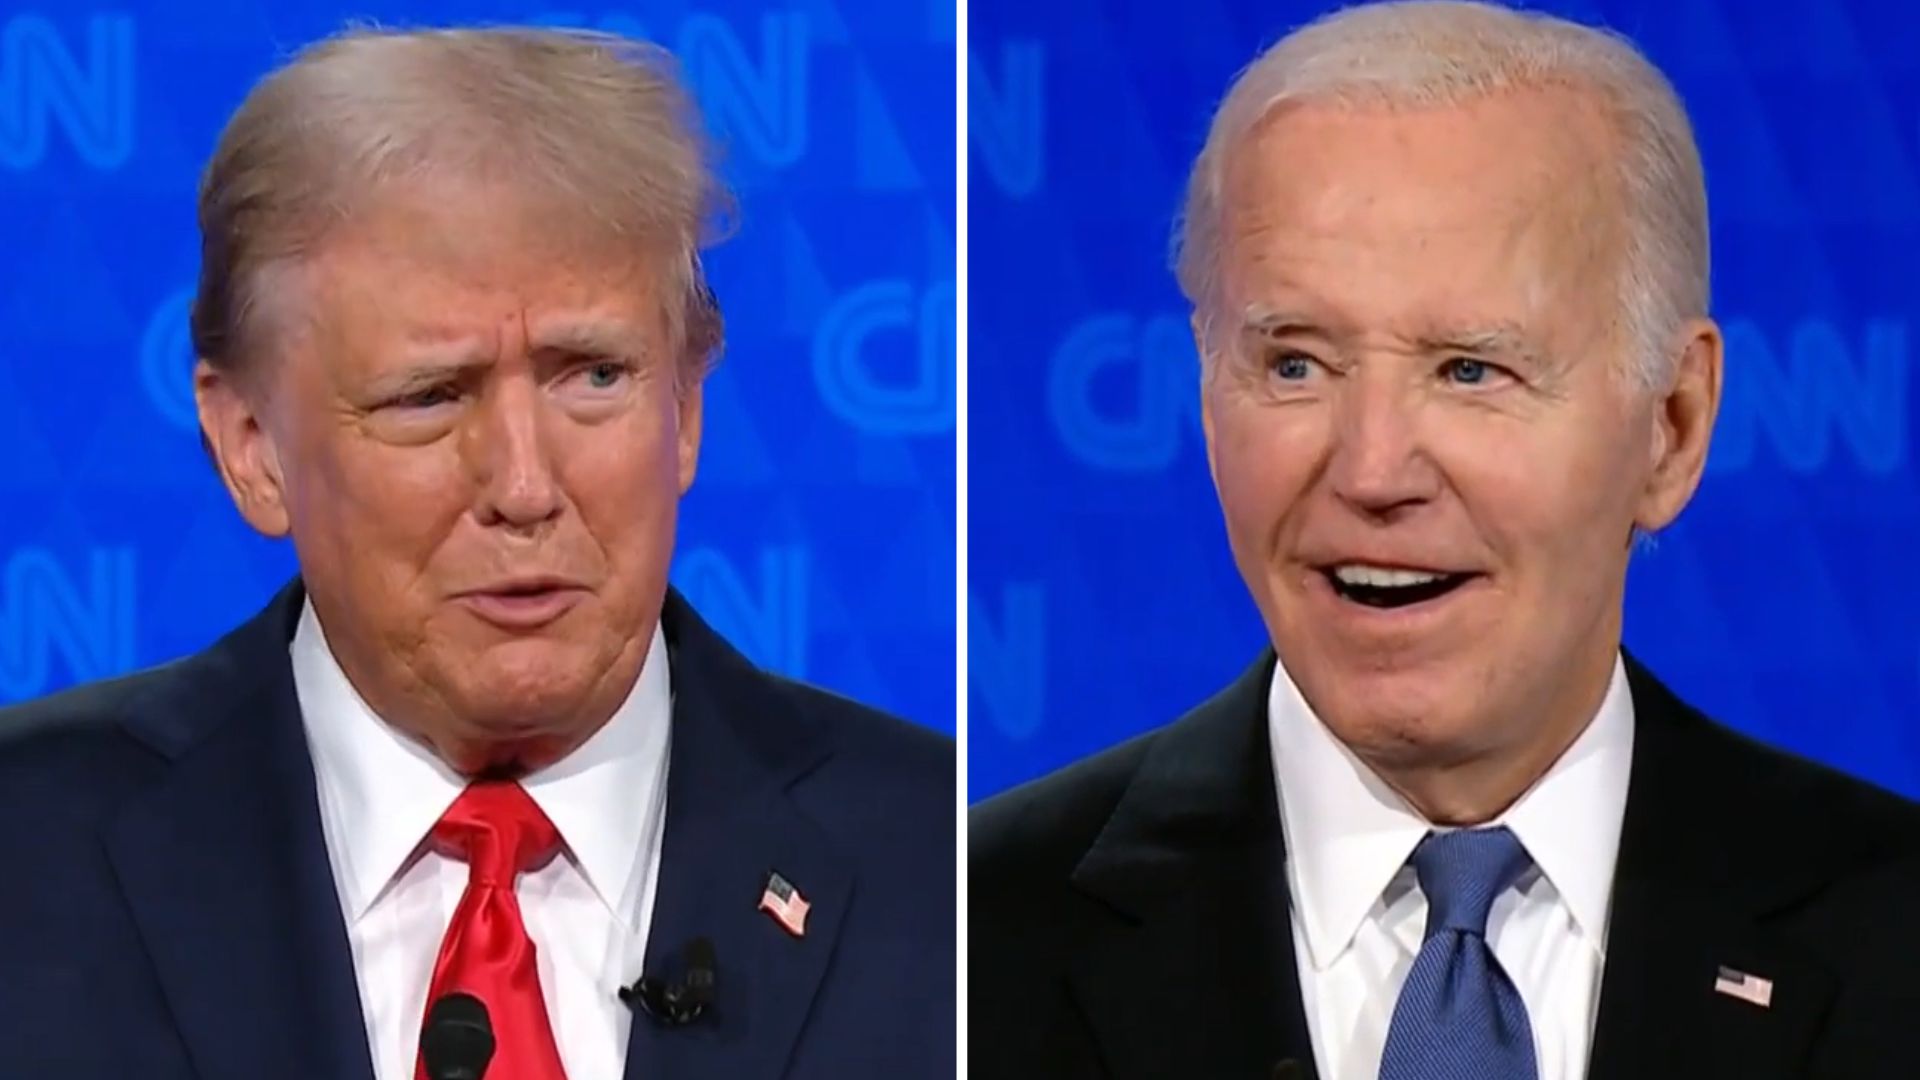 Em debate, Biden chama Trump de ‘chorão’ e ex-presidente diz que respeitará resultado de eleição